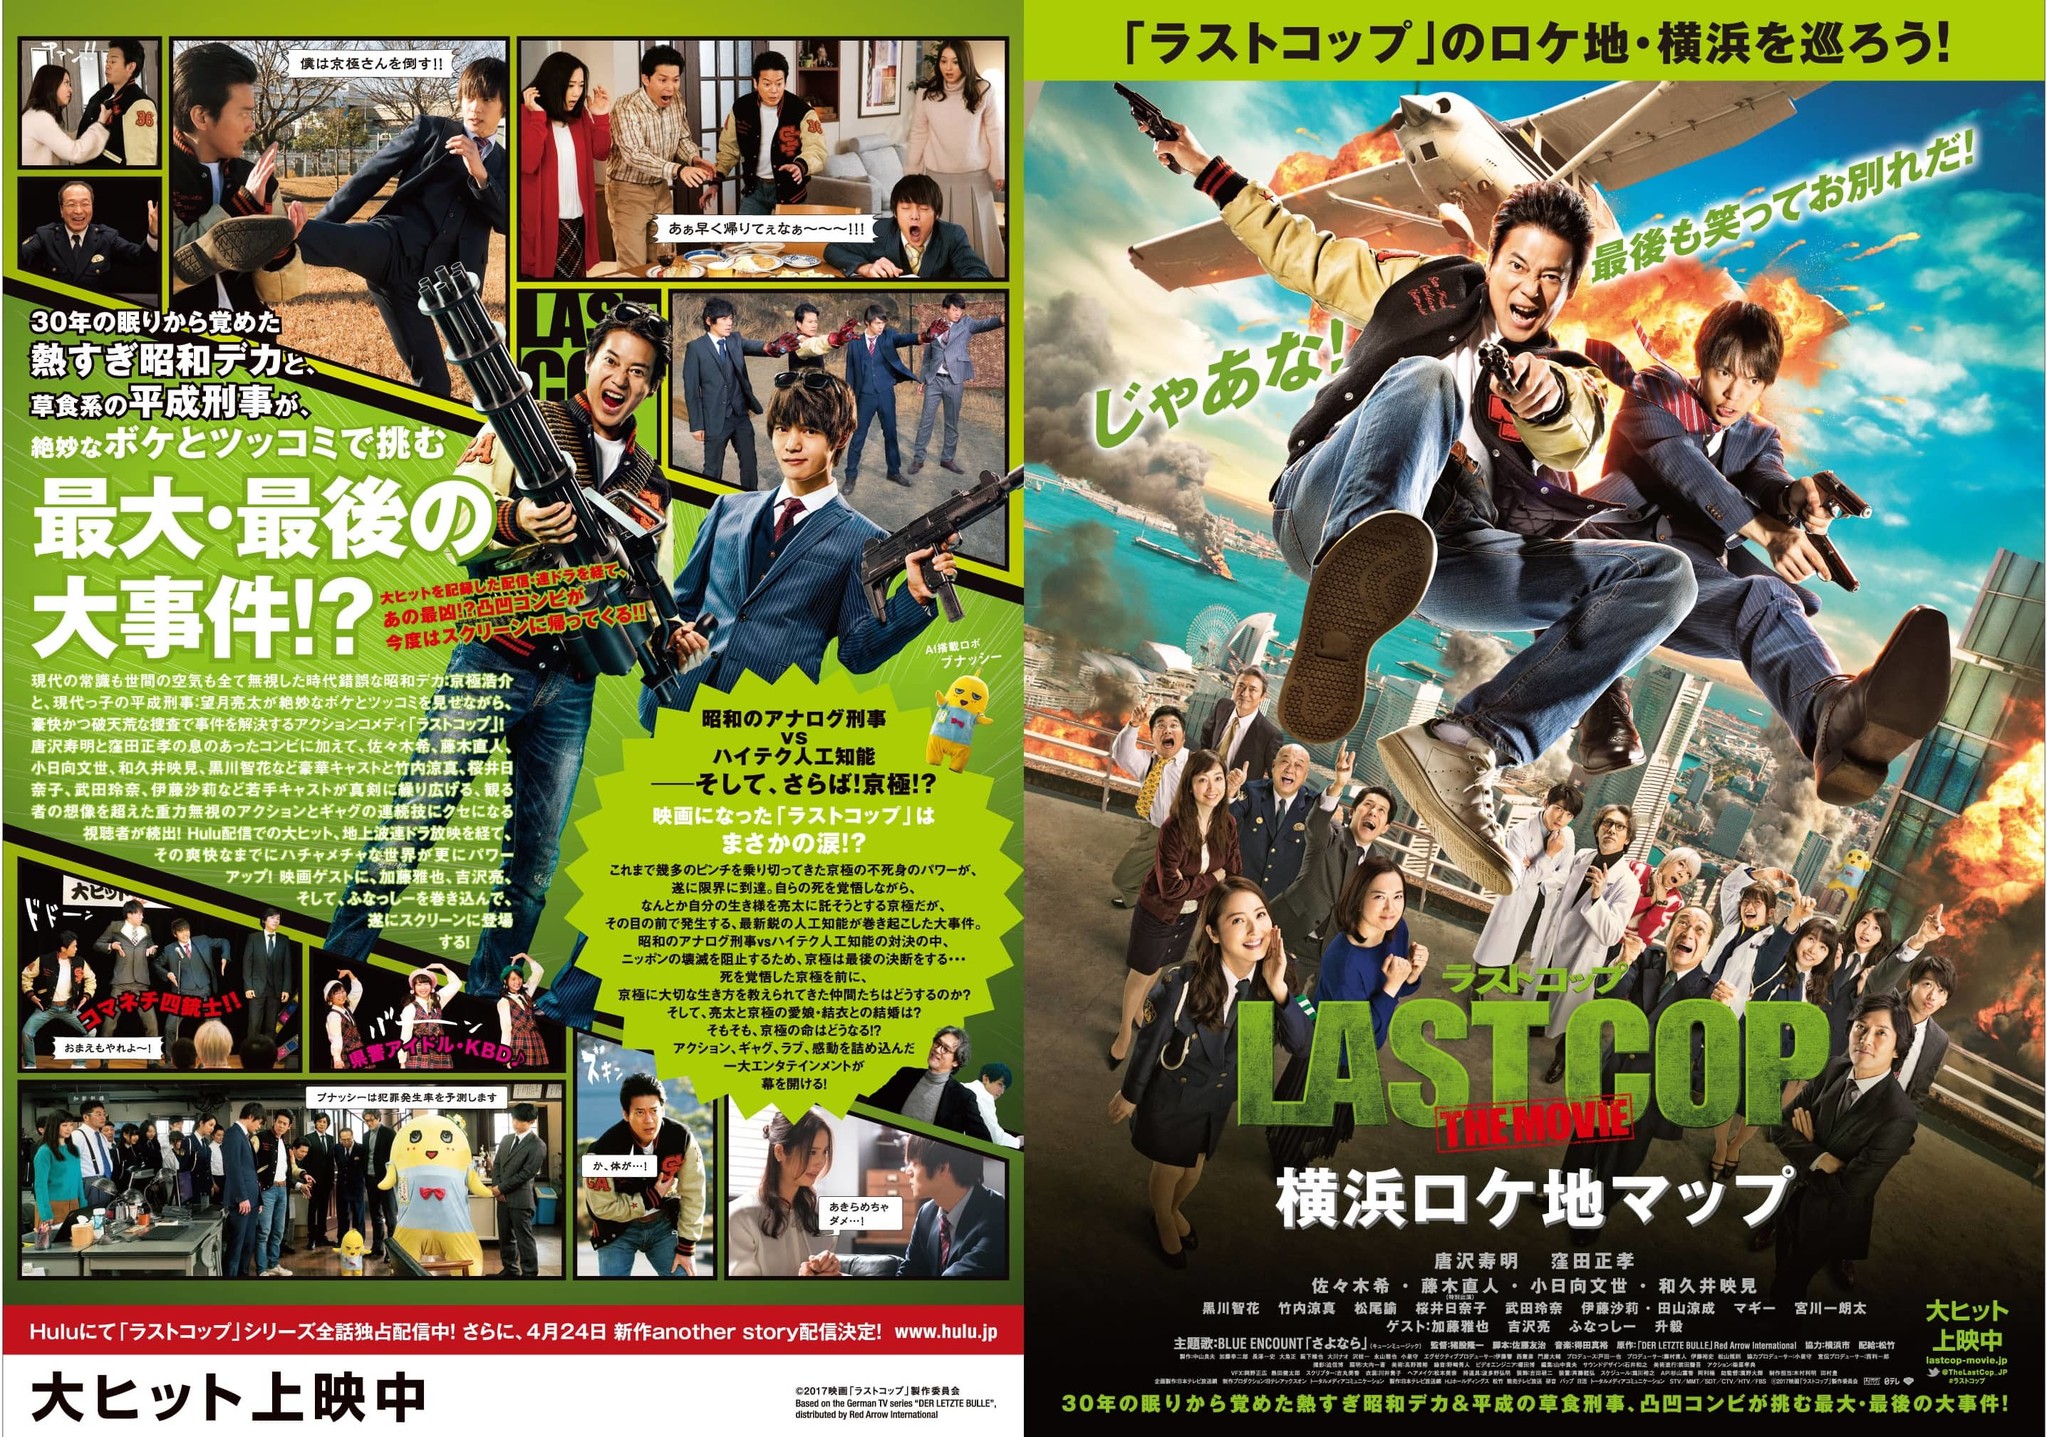 ラストコップ The Movie と横浜市がタイアップ 映画 ドラマの舞台を巡る横浜ロケ地マップが完成 横浜市のプレスリリース